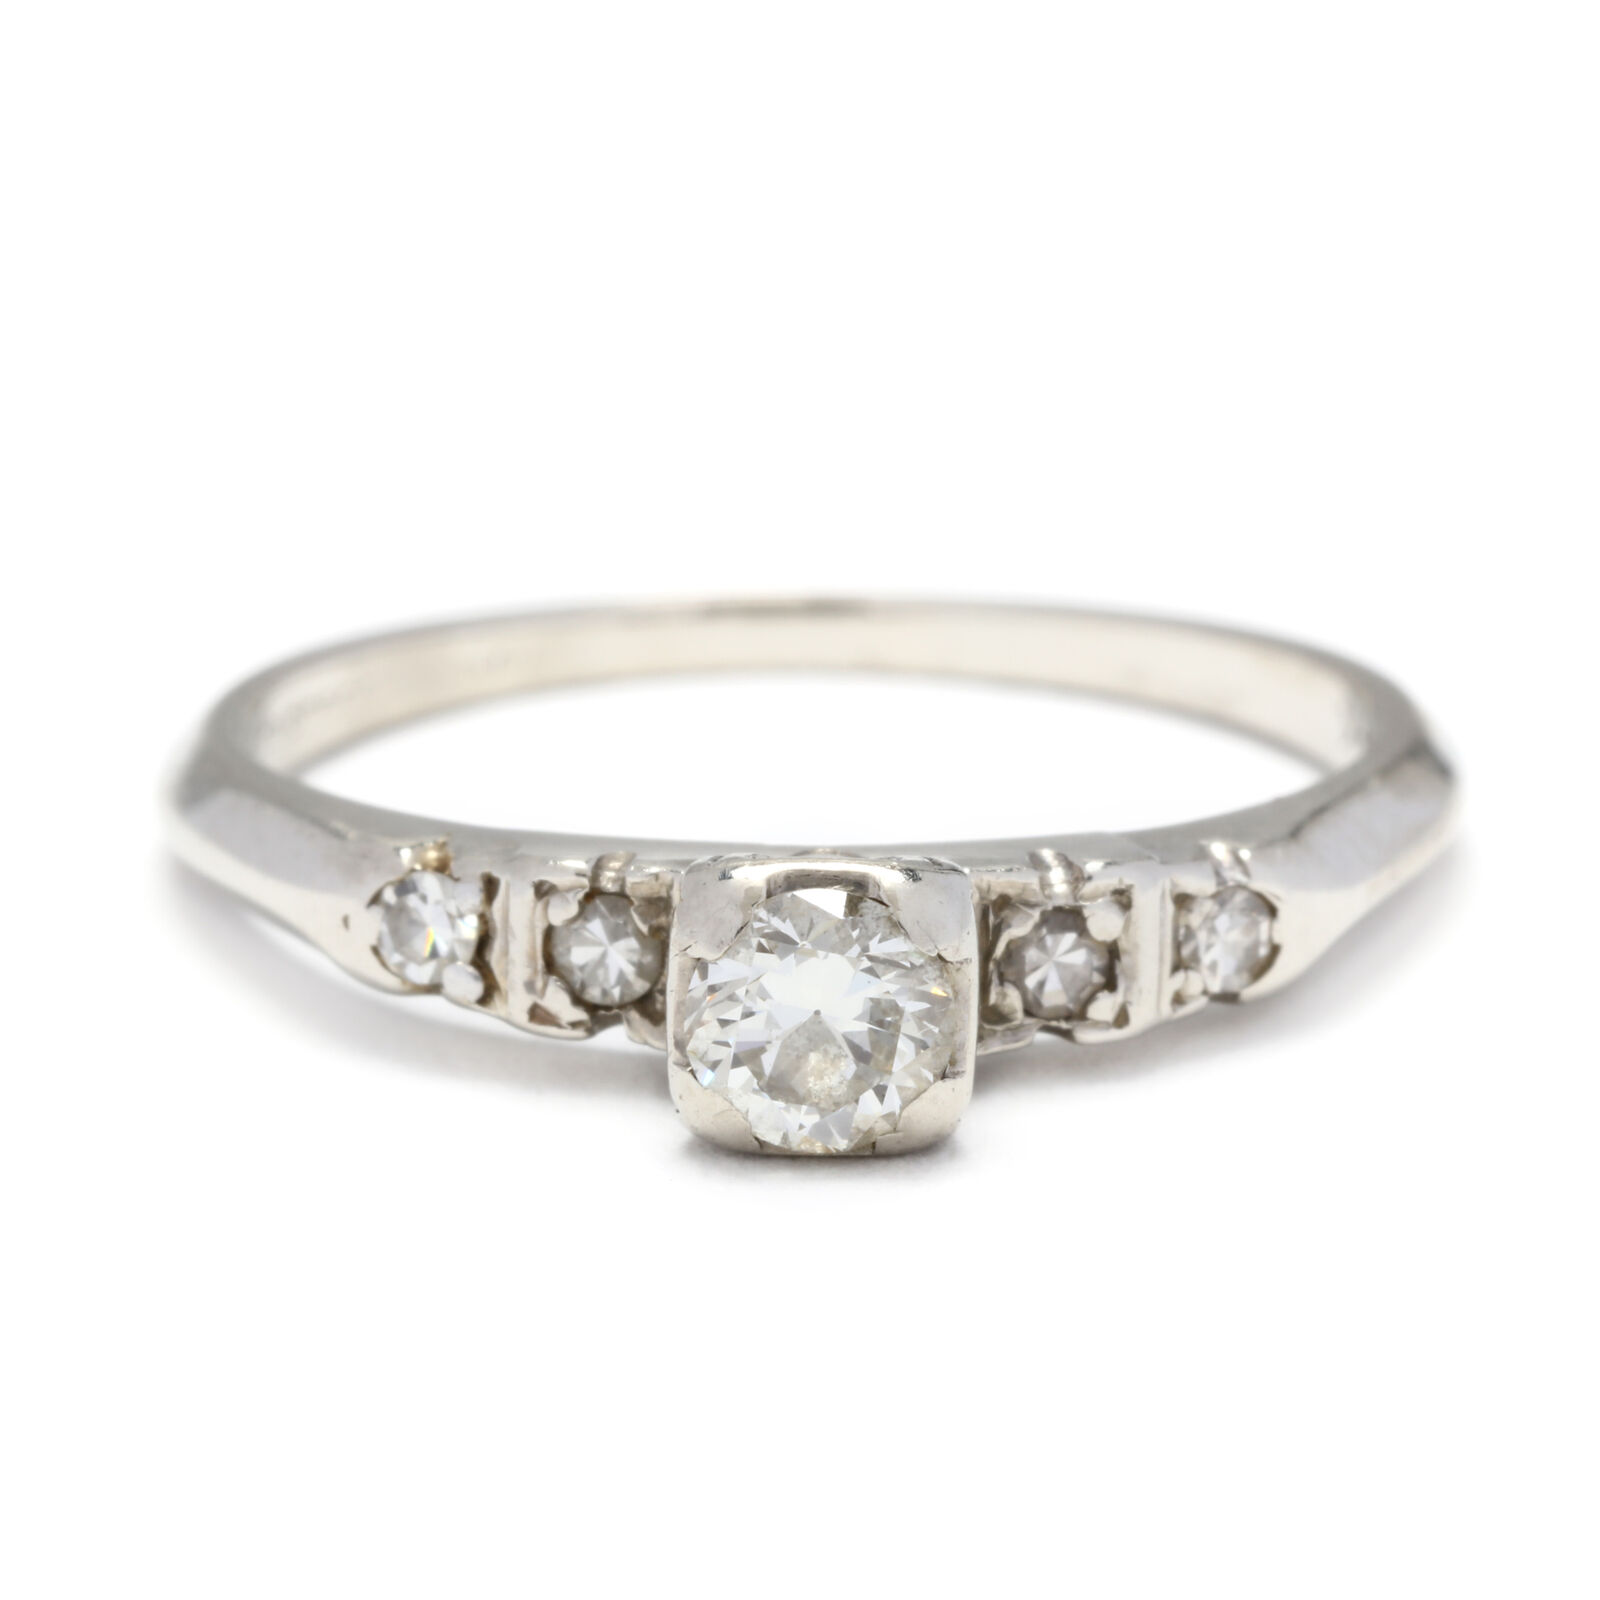 14kt White Gold Diamond Engagement Ring